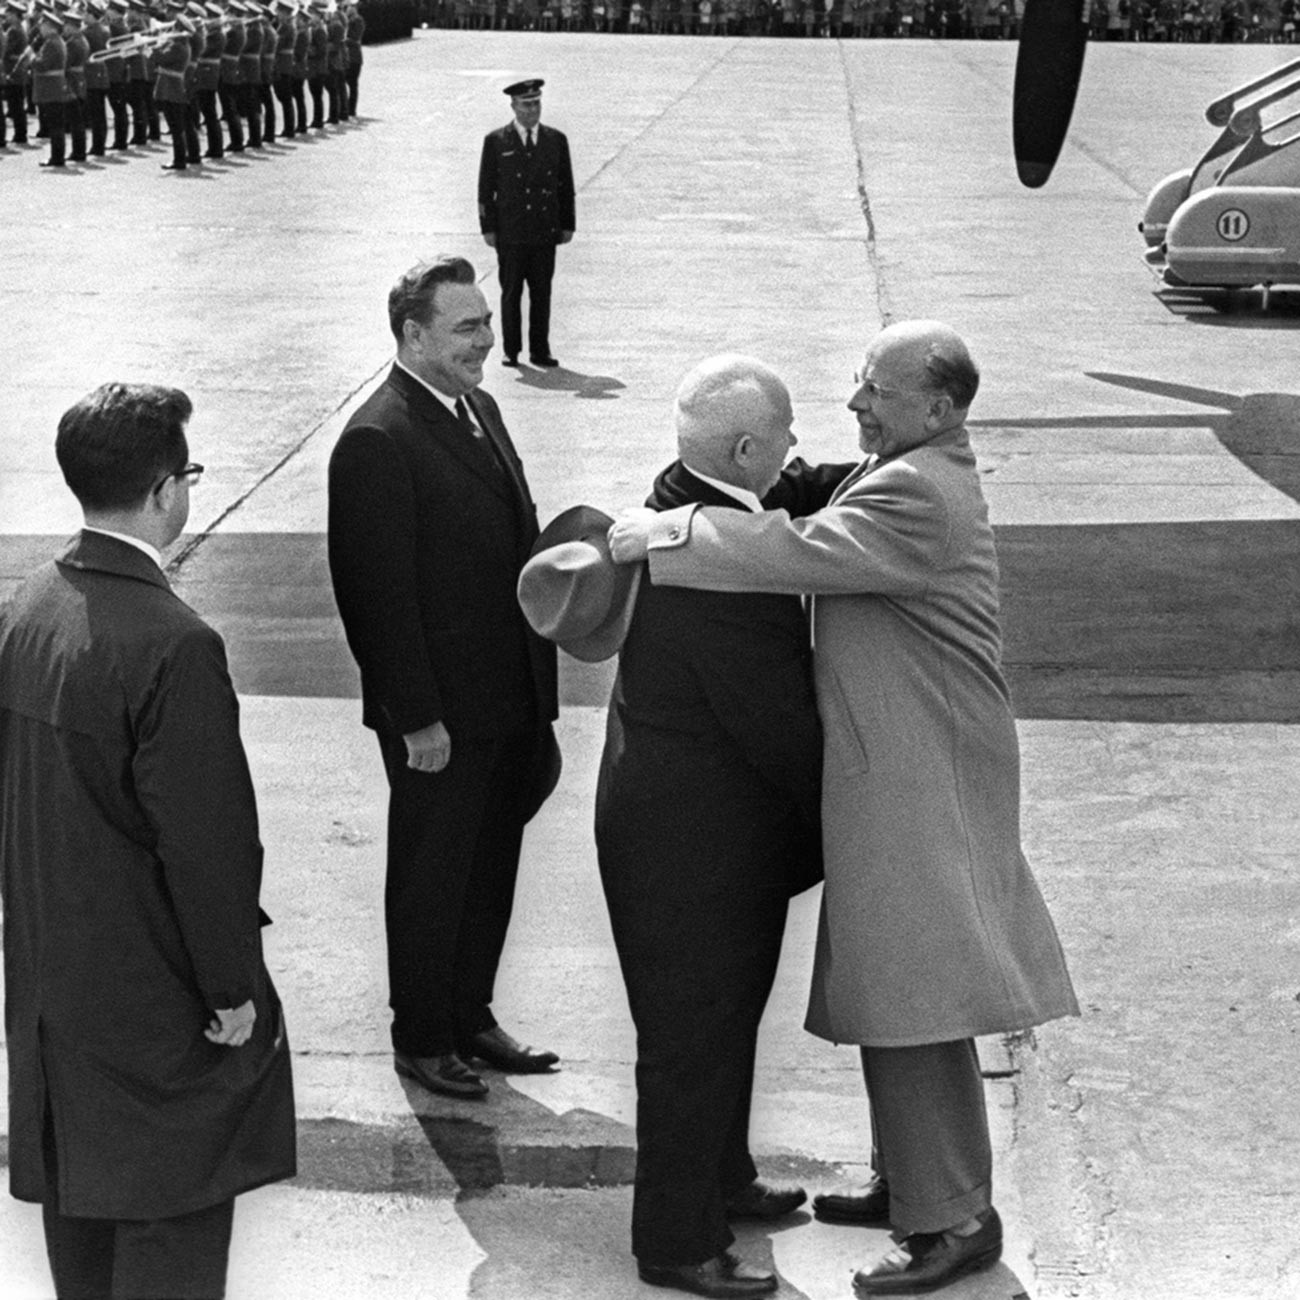 Шеф државе Никита Хрушчов заједно са Леонидом Брежњевом дочекује лидера Источне Немачке Валтера Улбрихта.